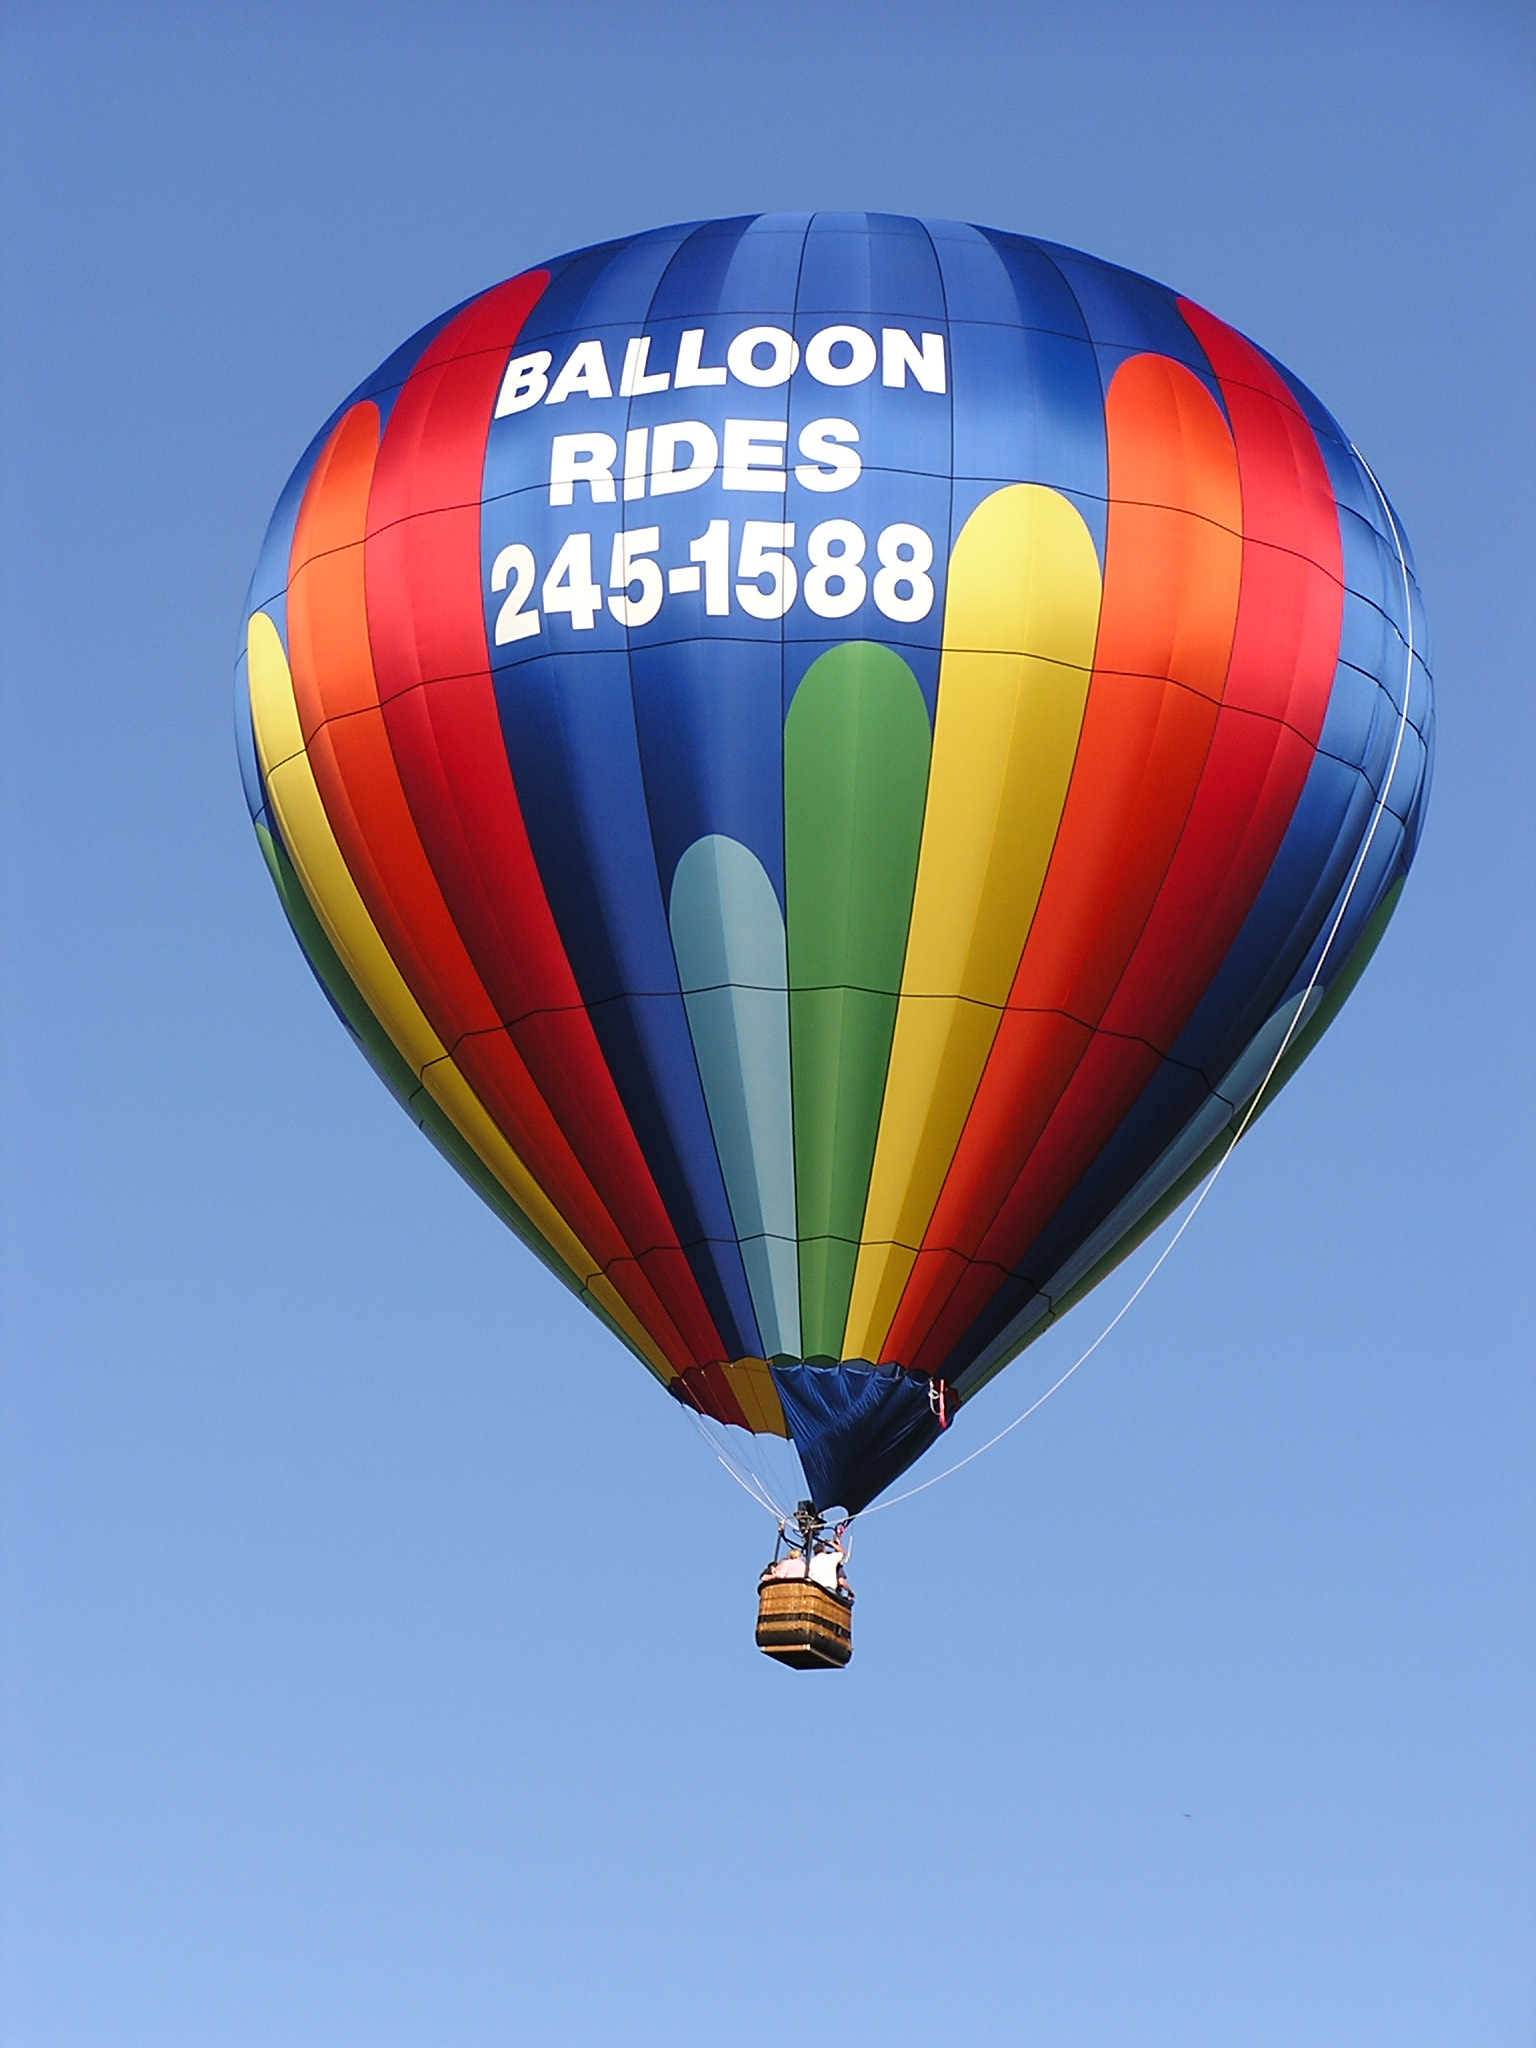 08-14-2013 Balloon Flight